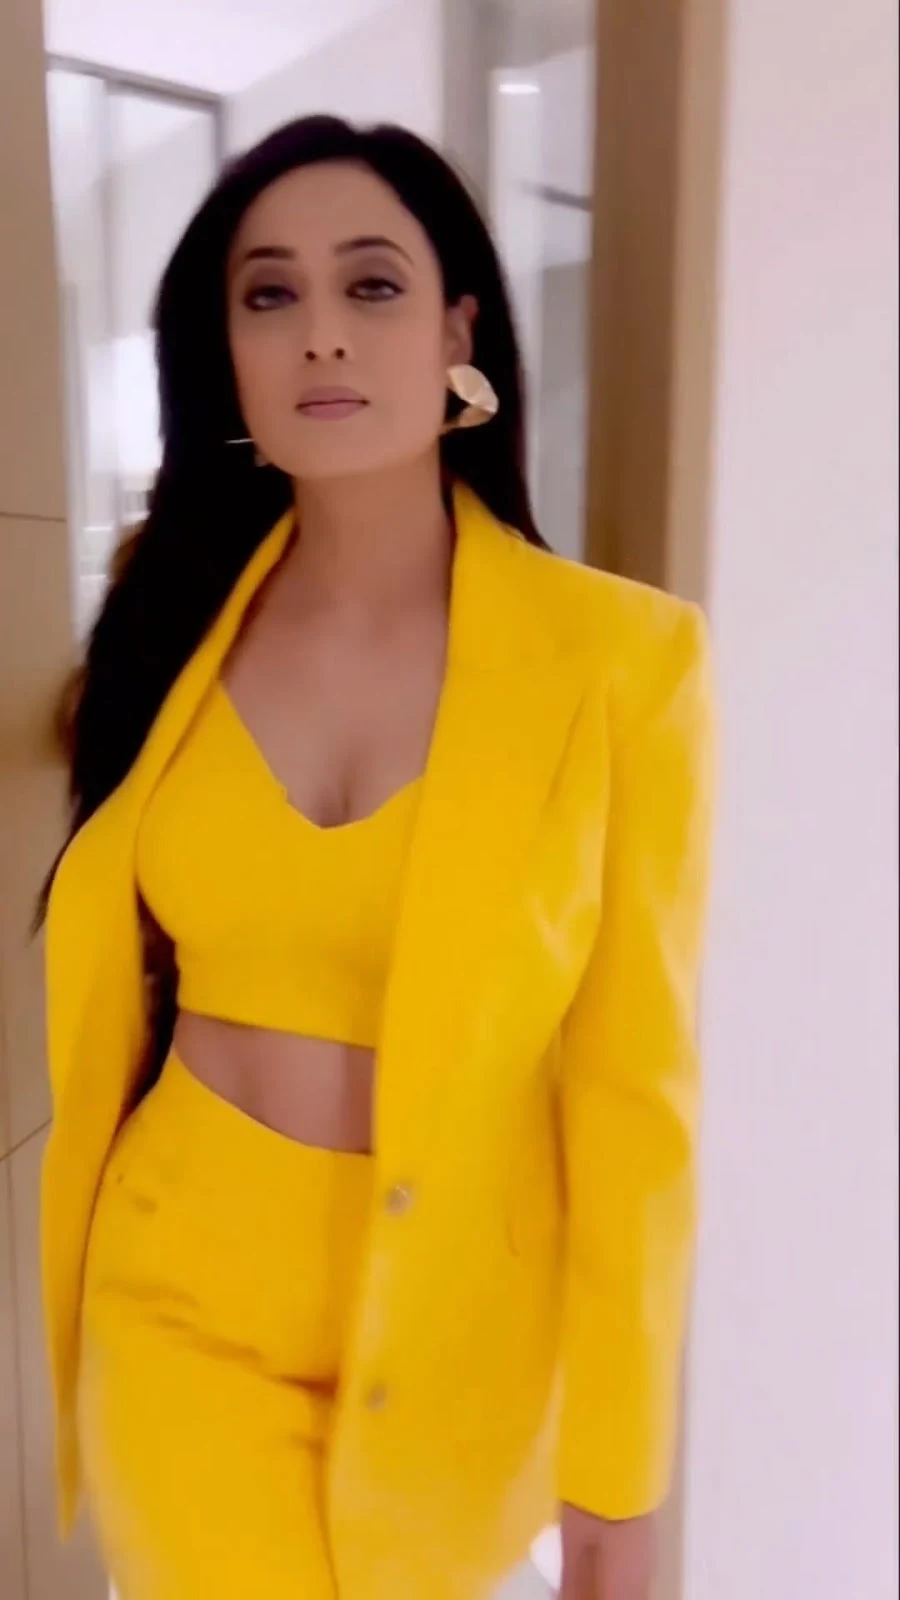 shweta tiwari cleavage stylish yellow outfit